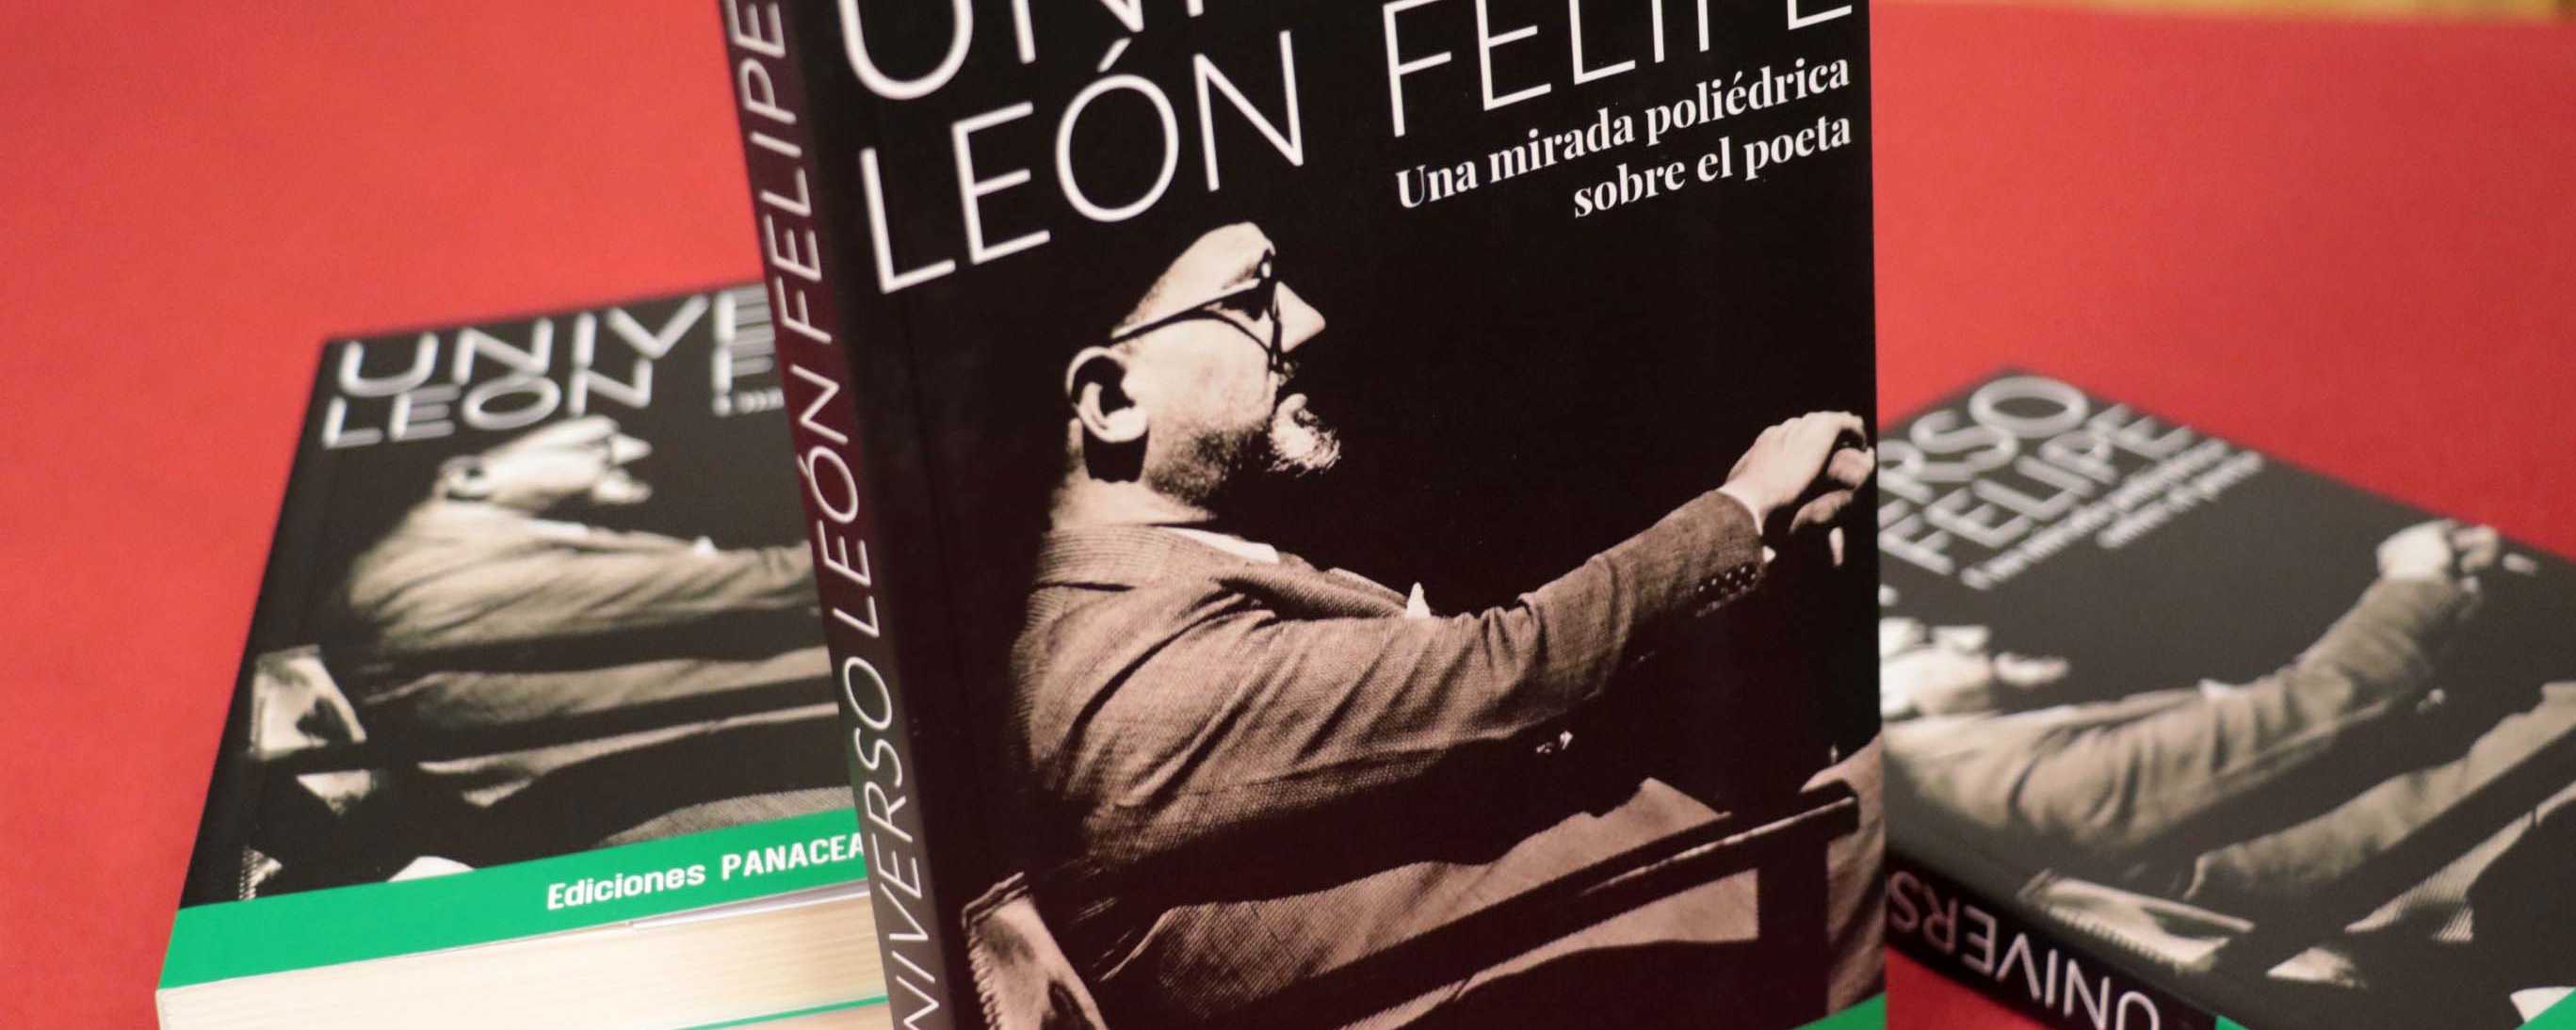 Presentado el libro Universo León Felipe